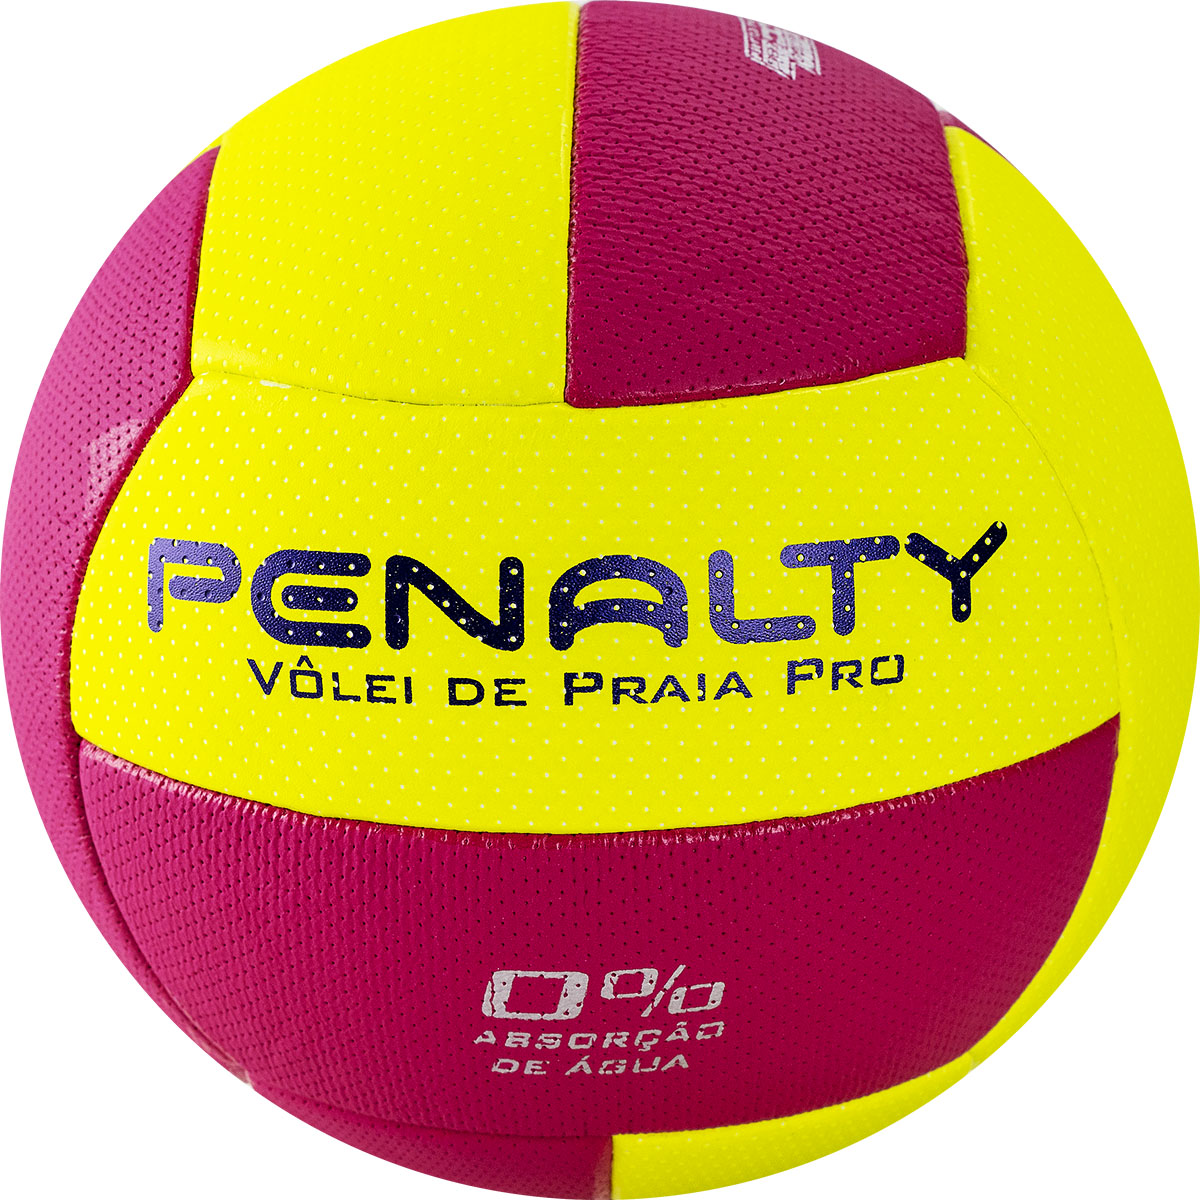 фото Мяч для пляжного волейбола penalty bola volei de praia pro №5 желтый/розовый